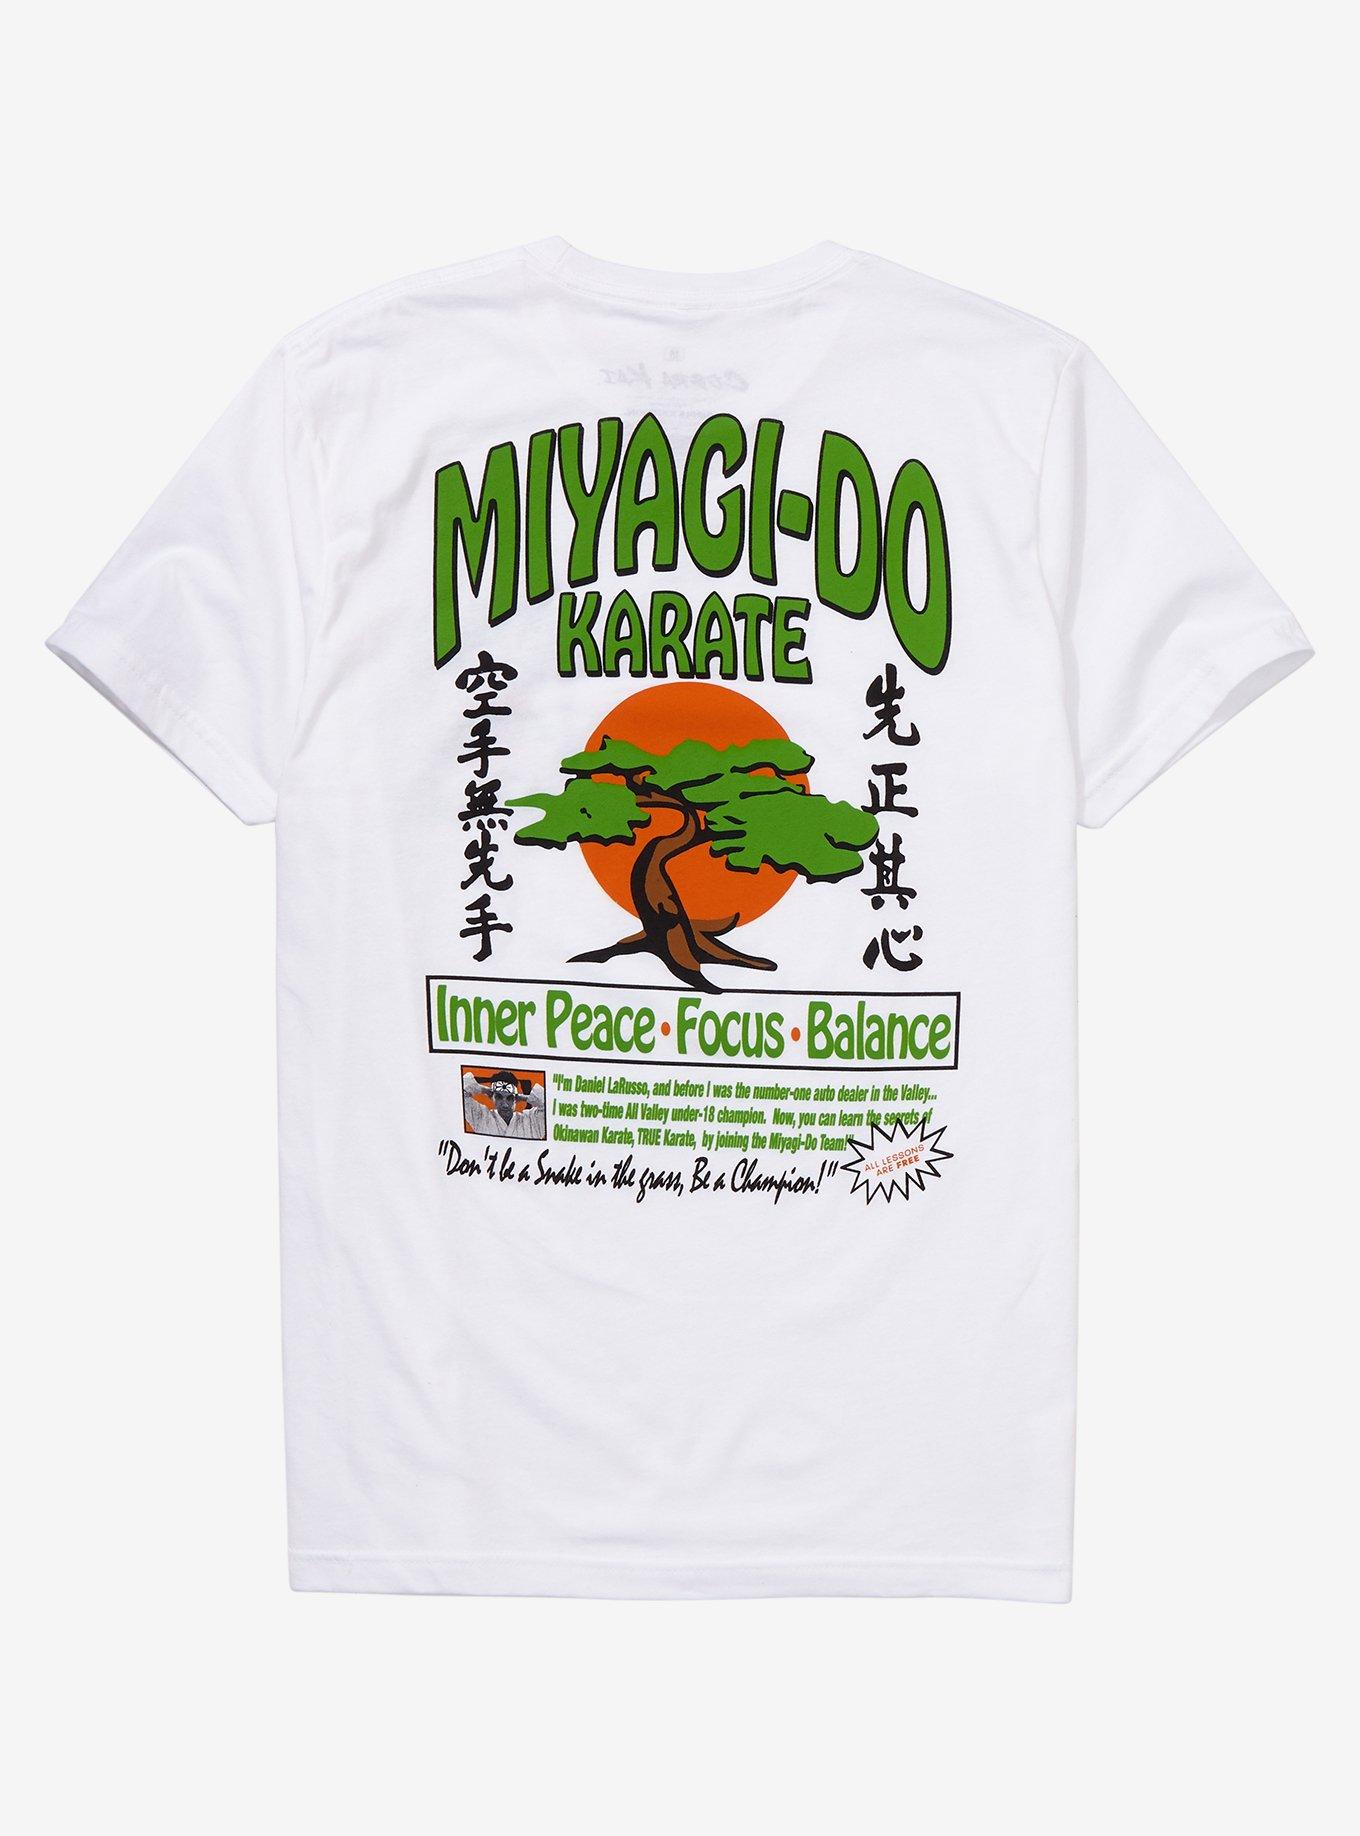 Miyagi Do Karate Pop Socket – Cobra Kai Store